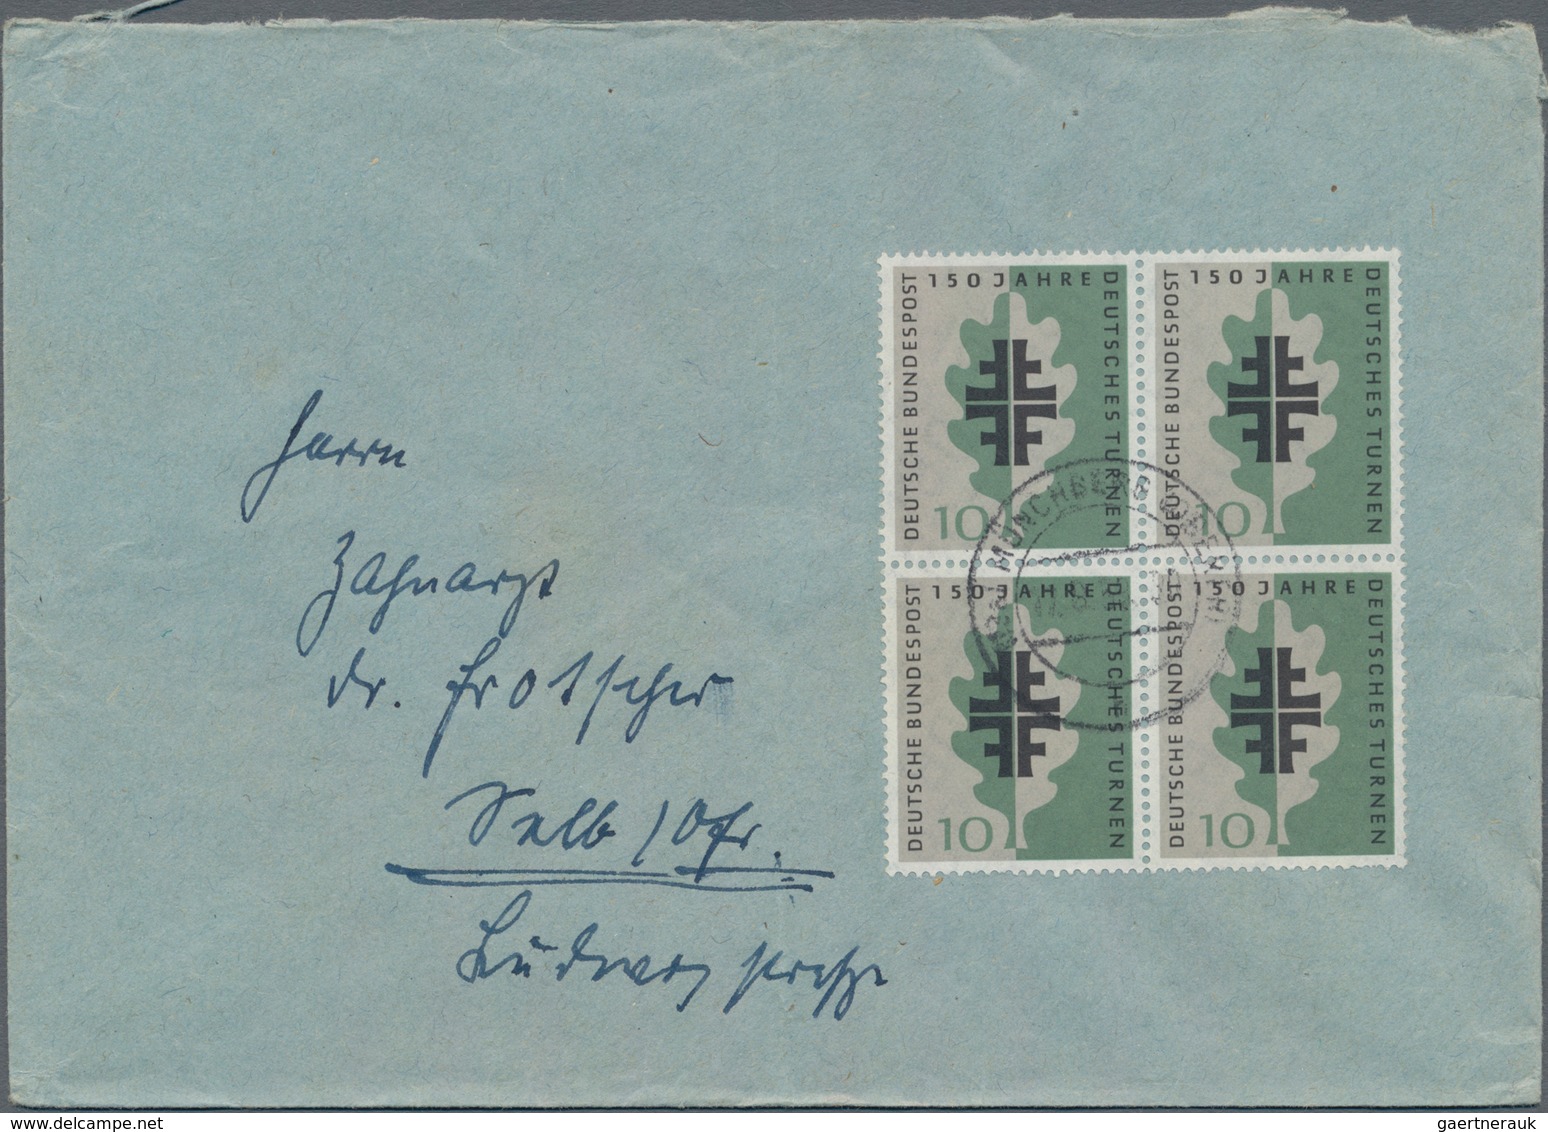 Bundesrepublik Deutschland: 1952/1961, Partie von 61 Briefen/Karten mit Sondermarken-Einzel- und Meh